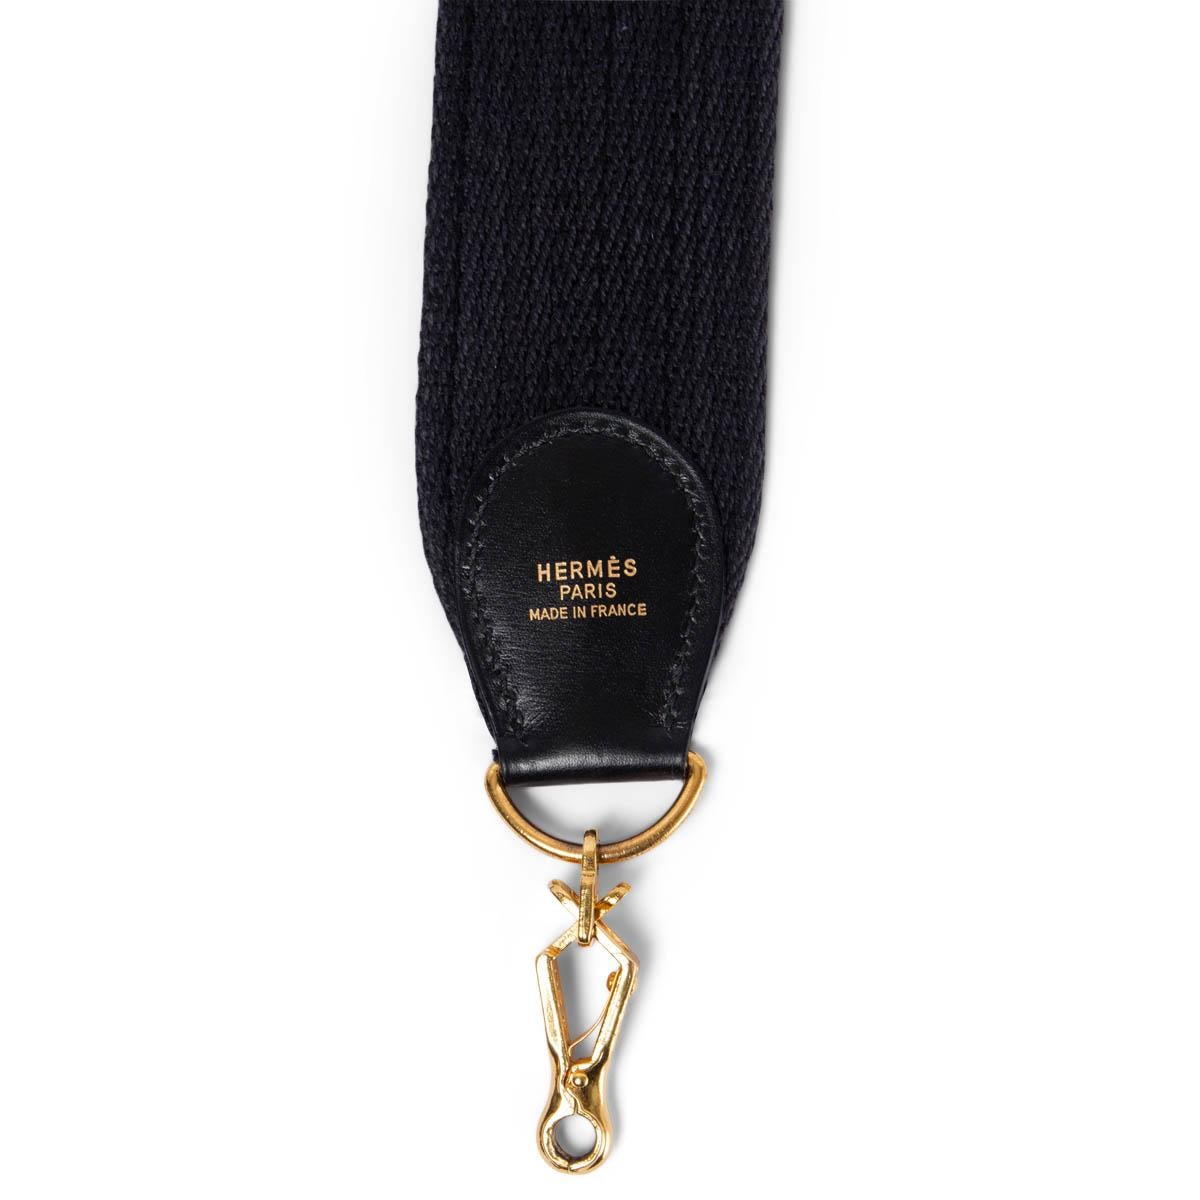 100% authentischer Hermès Schulterriemen für Ihre Kelly- oder Evelyne-Tasche aus schwarzem Canvas und schwarzem Leder, verblasst. Wurde getragen und ist in ausgezeichnetem Zustand.

Messungen
Breite	5cm (2in)
Länge	110cm